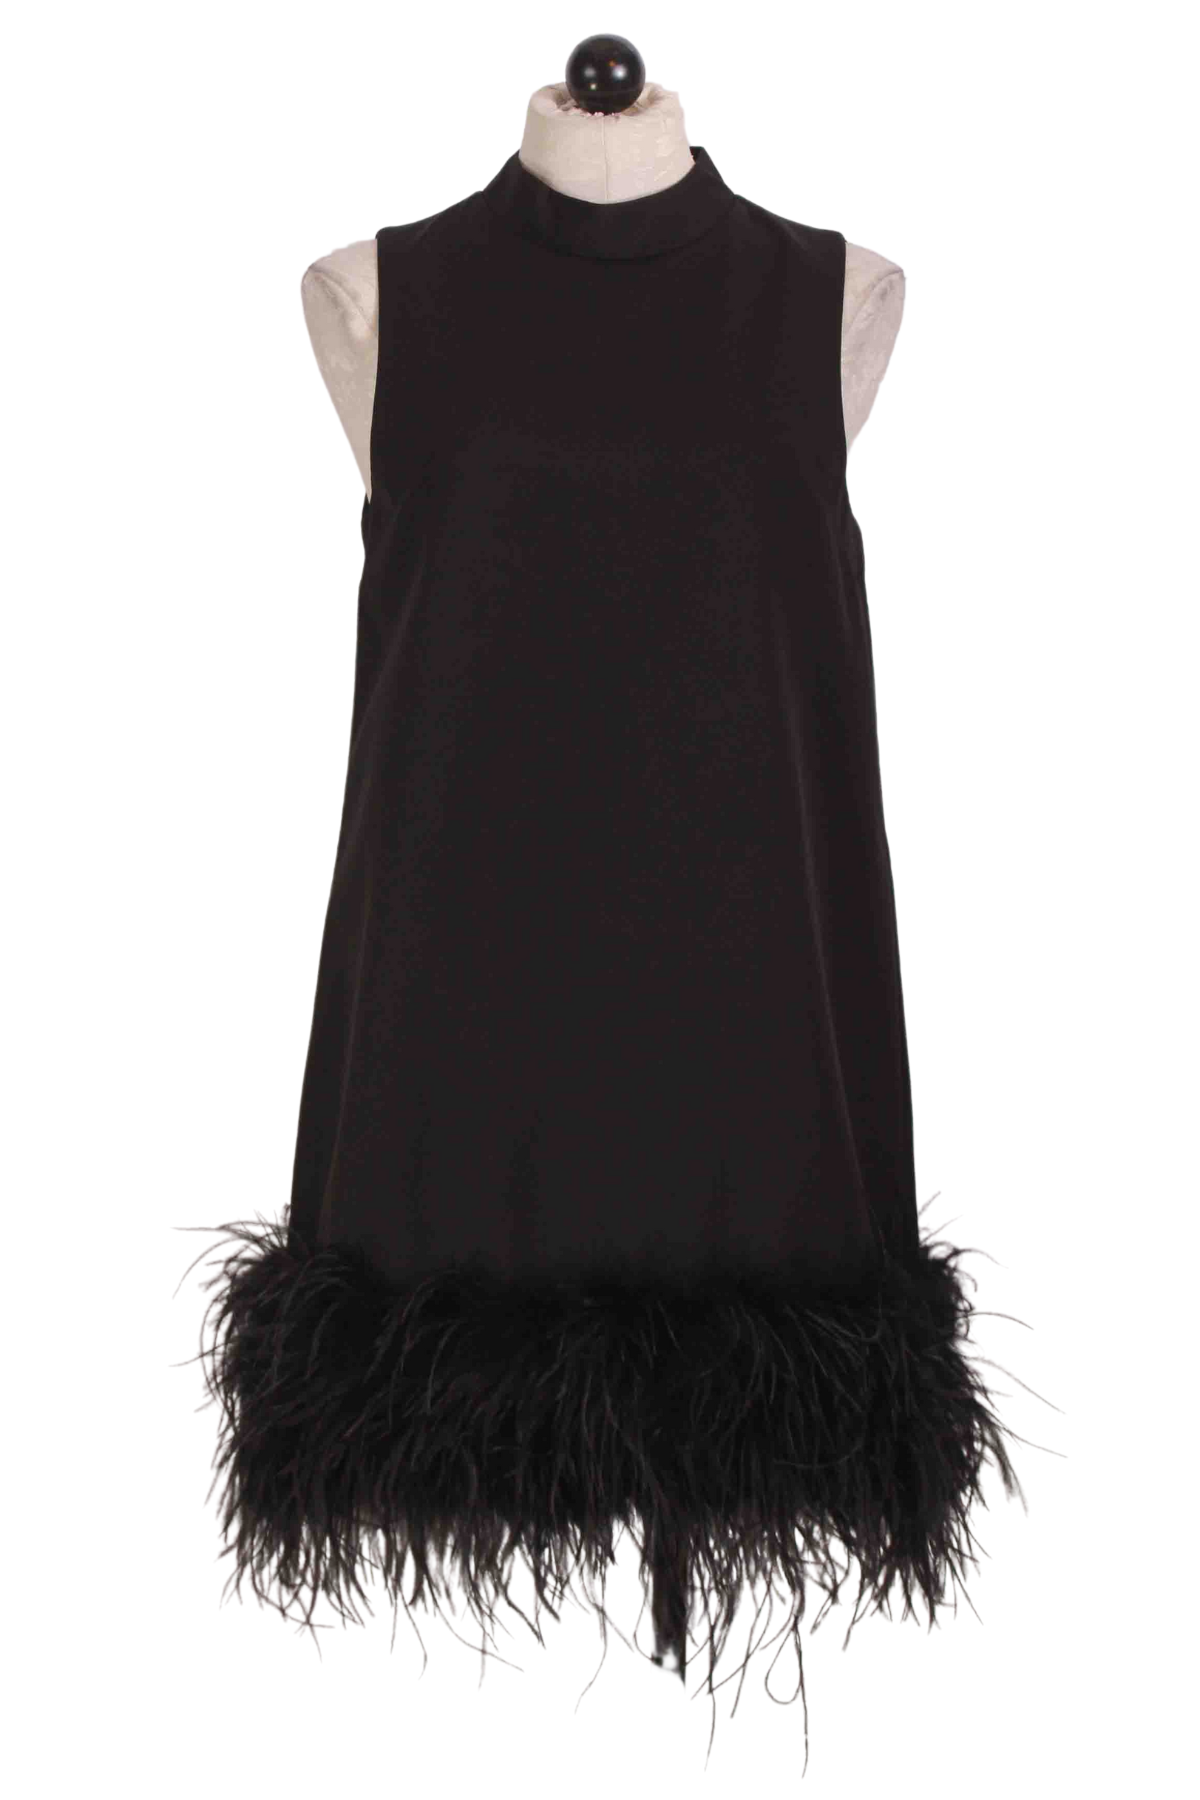 Black Sleeveless Dress with Ostrich Feather Bottom by Jessie Liu